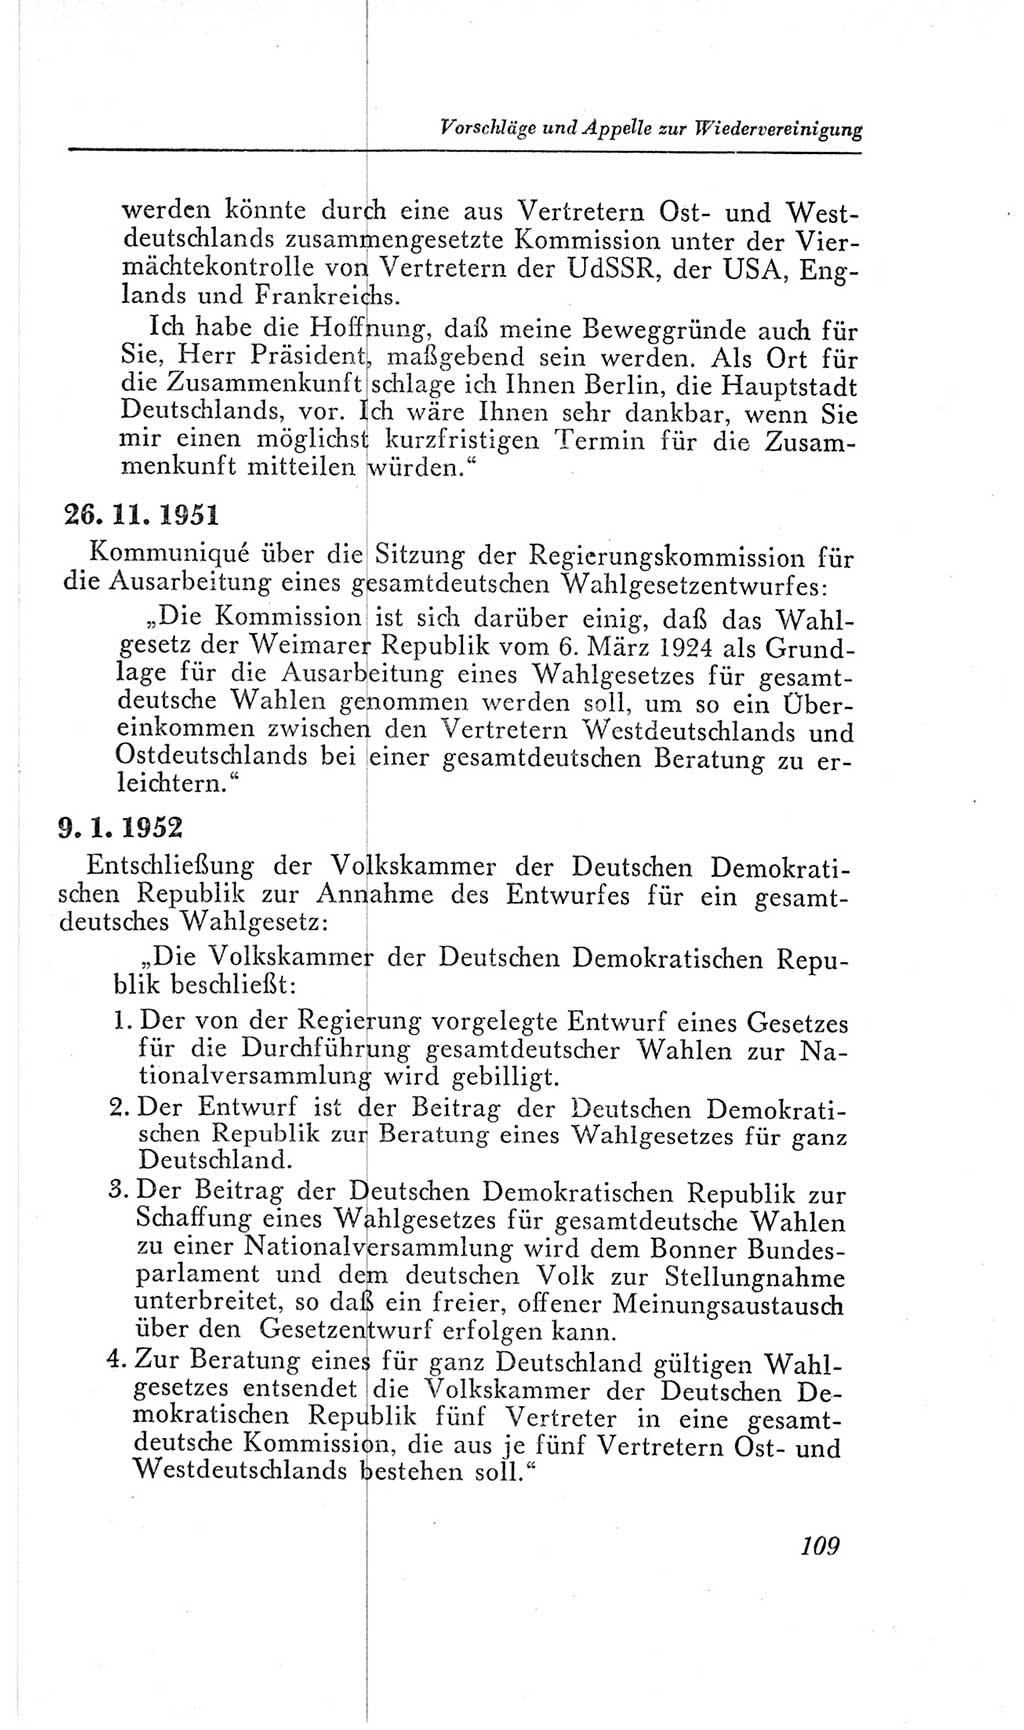 Handbuch der Volkskammer (VK) der Deutschen Demokratischen Republik (DDR), 2. Wahlperiode 1954-1958, Seite 109 (Hdb. VK. DDR, 2. WP. 1954-1958, S. 109)